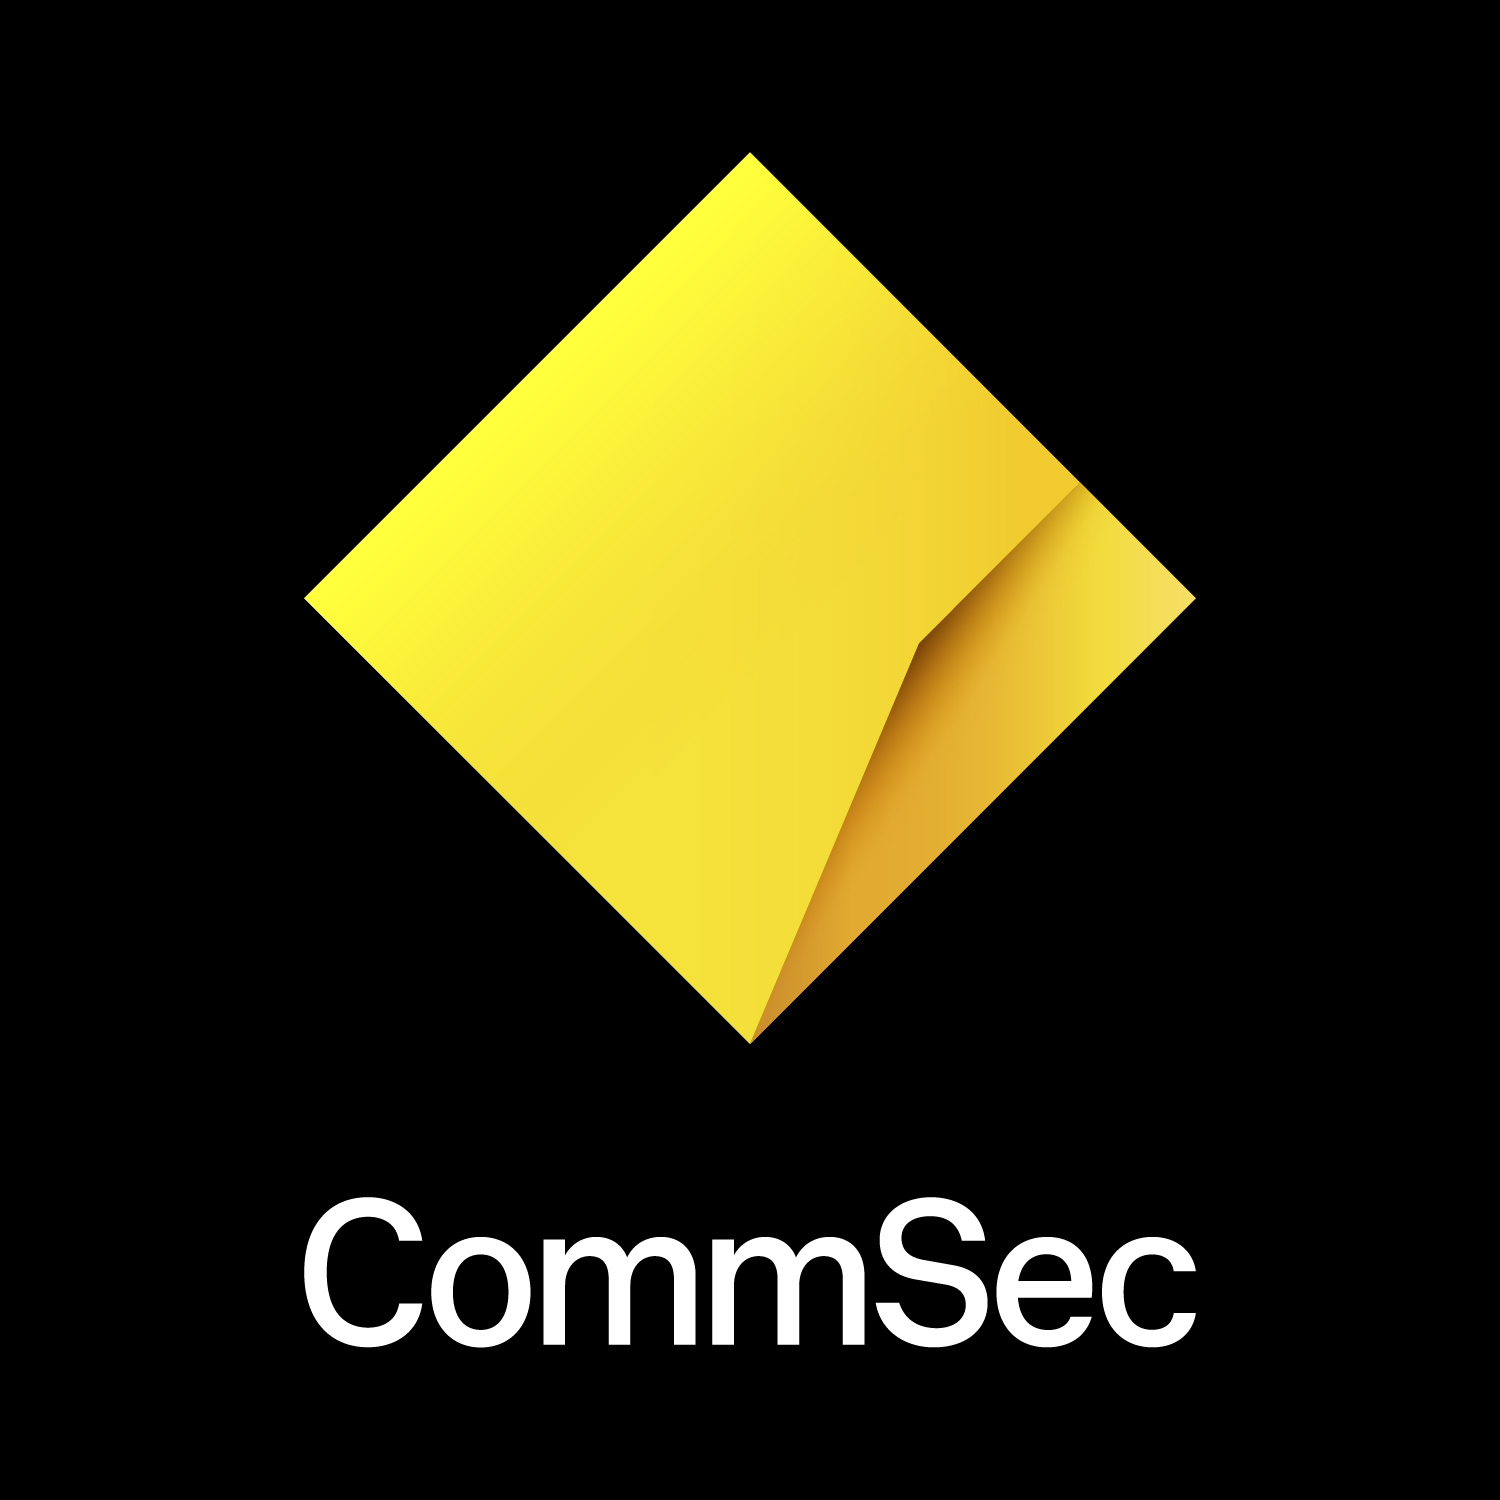 CommSec